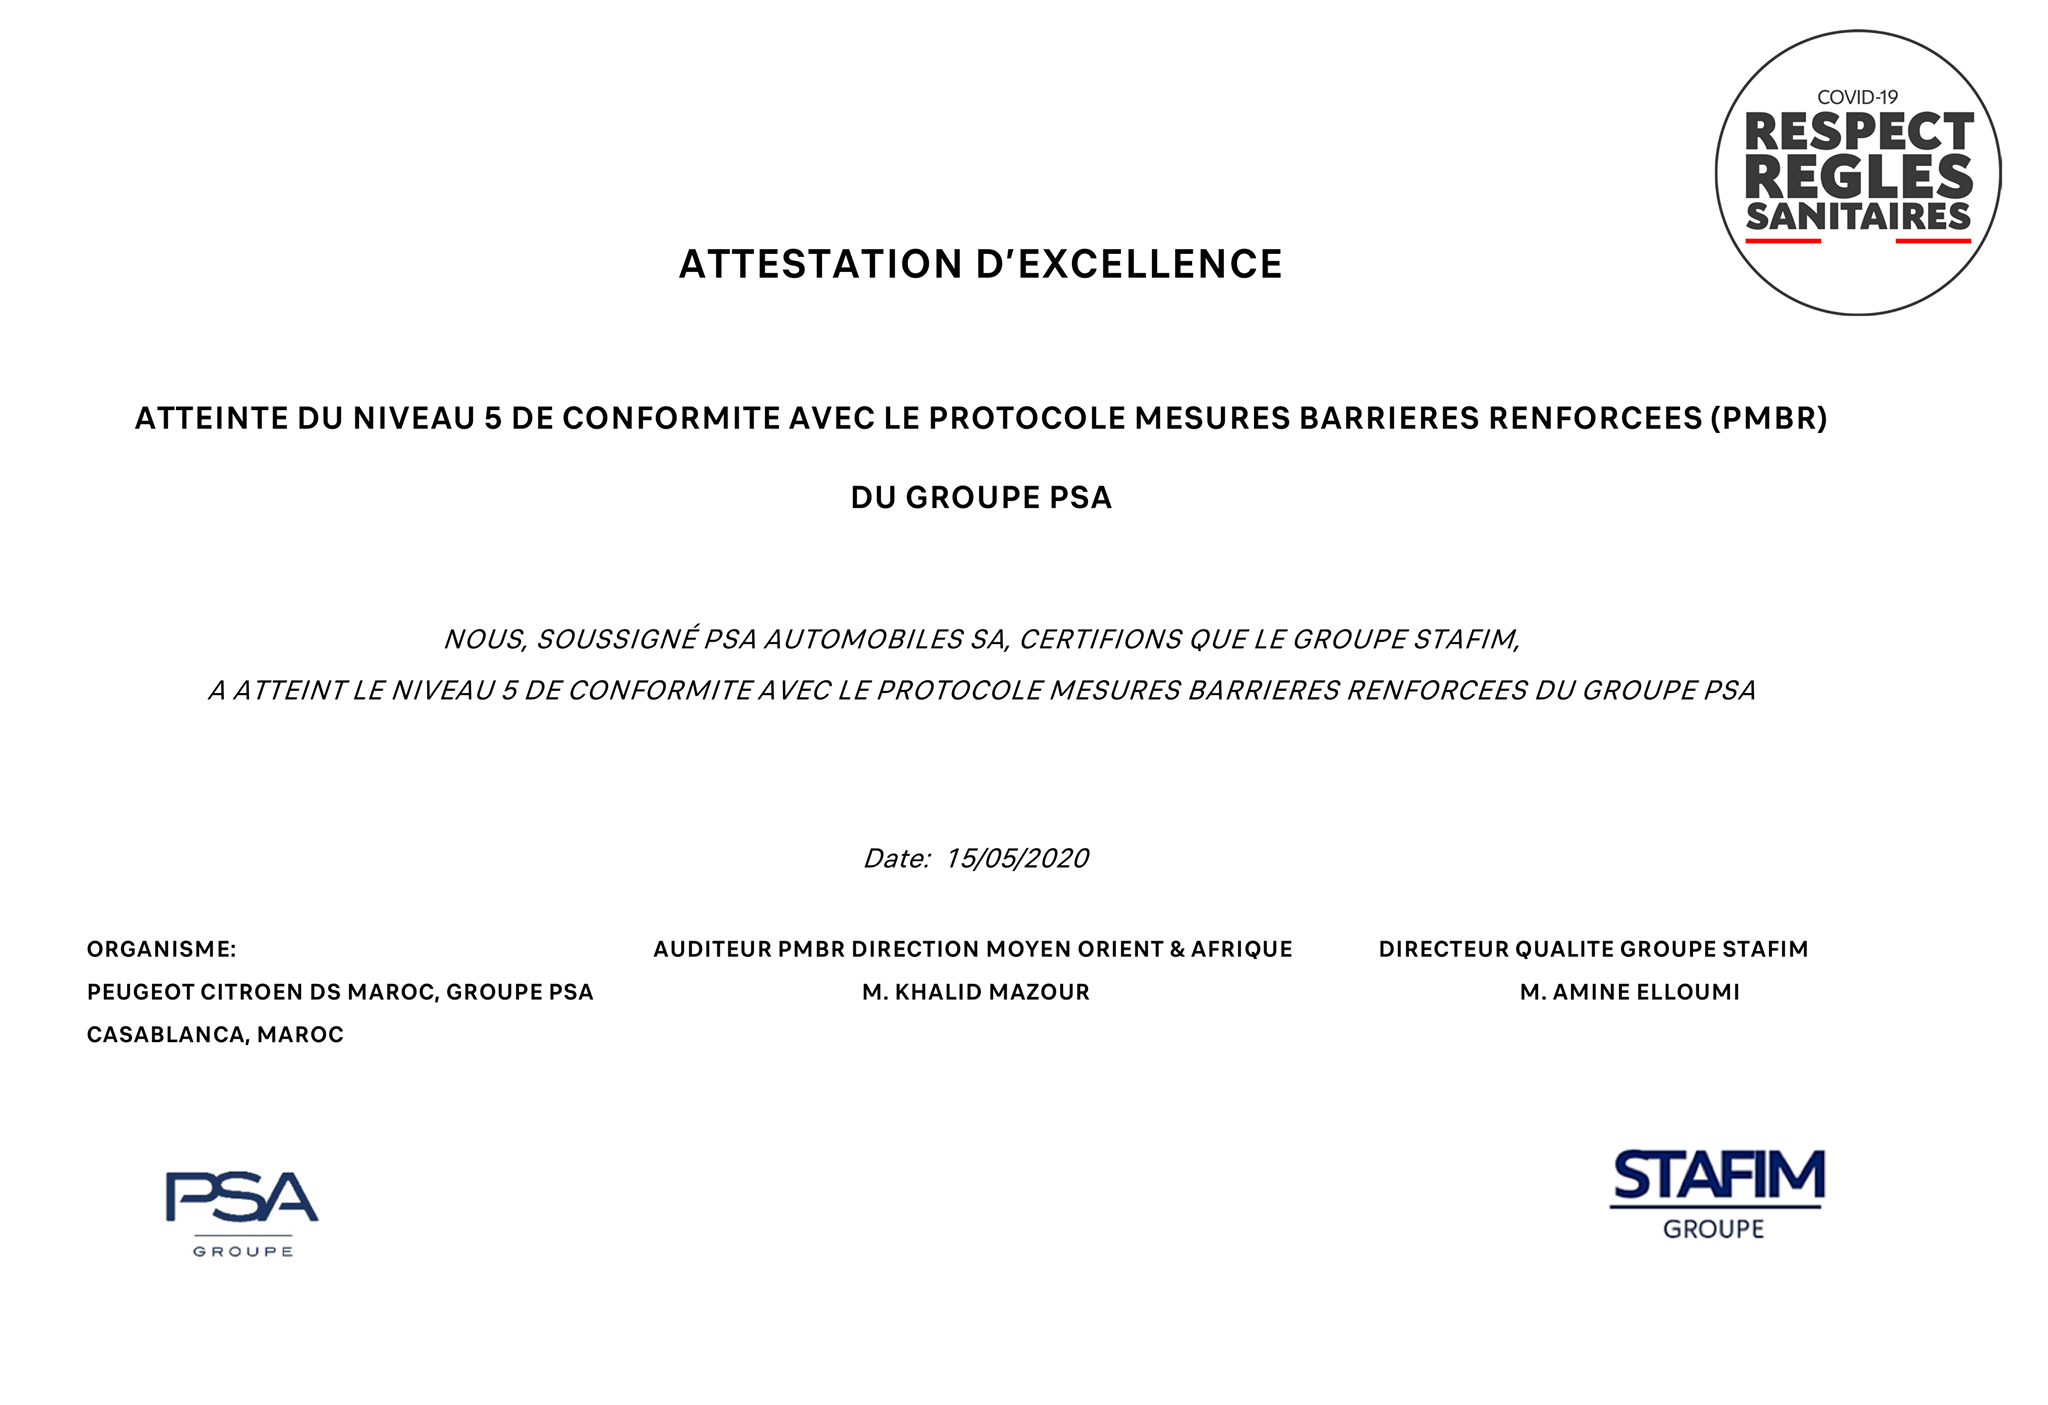 STAFIM Peugeot obtient l’attestation d’excellence pour le respect des règles sanitaires covid-19